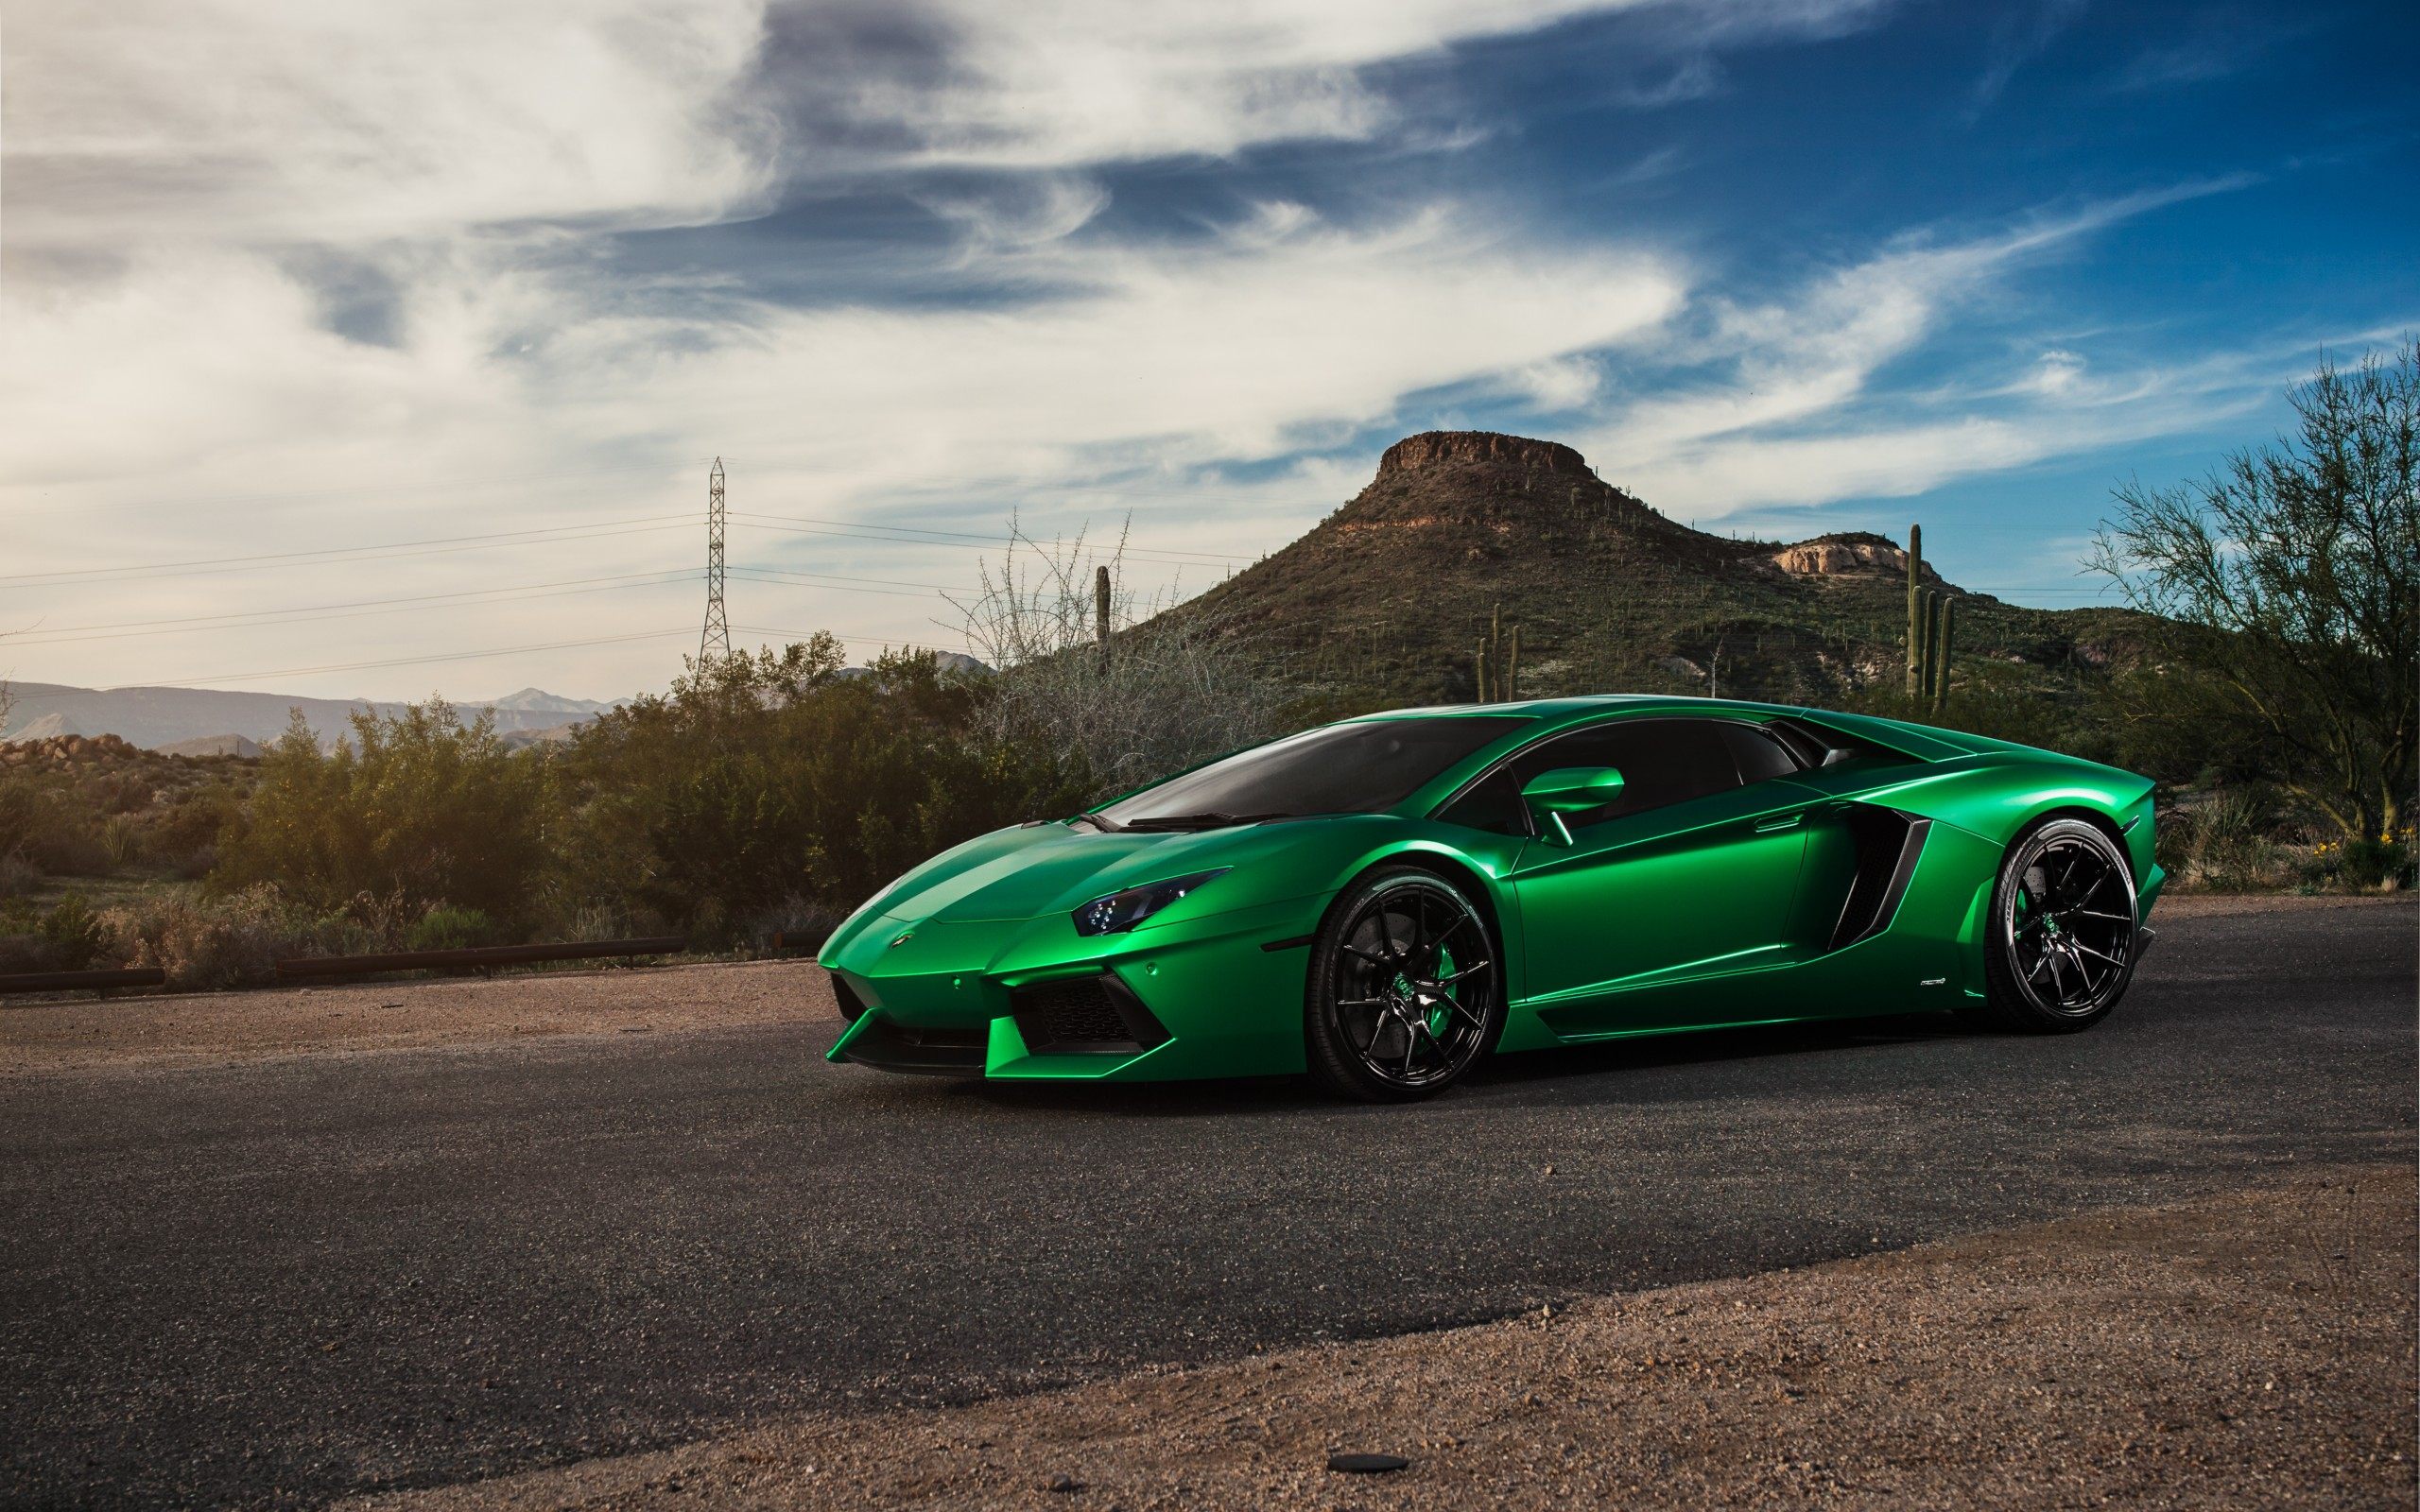 Green Lamborghini Supercar Wallpaper For Desktop Amp Mobile